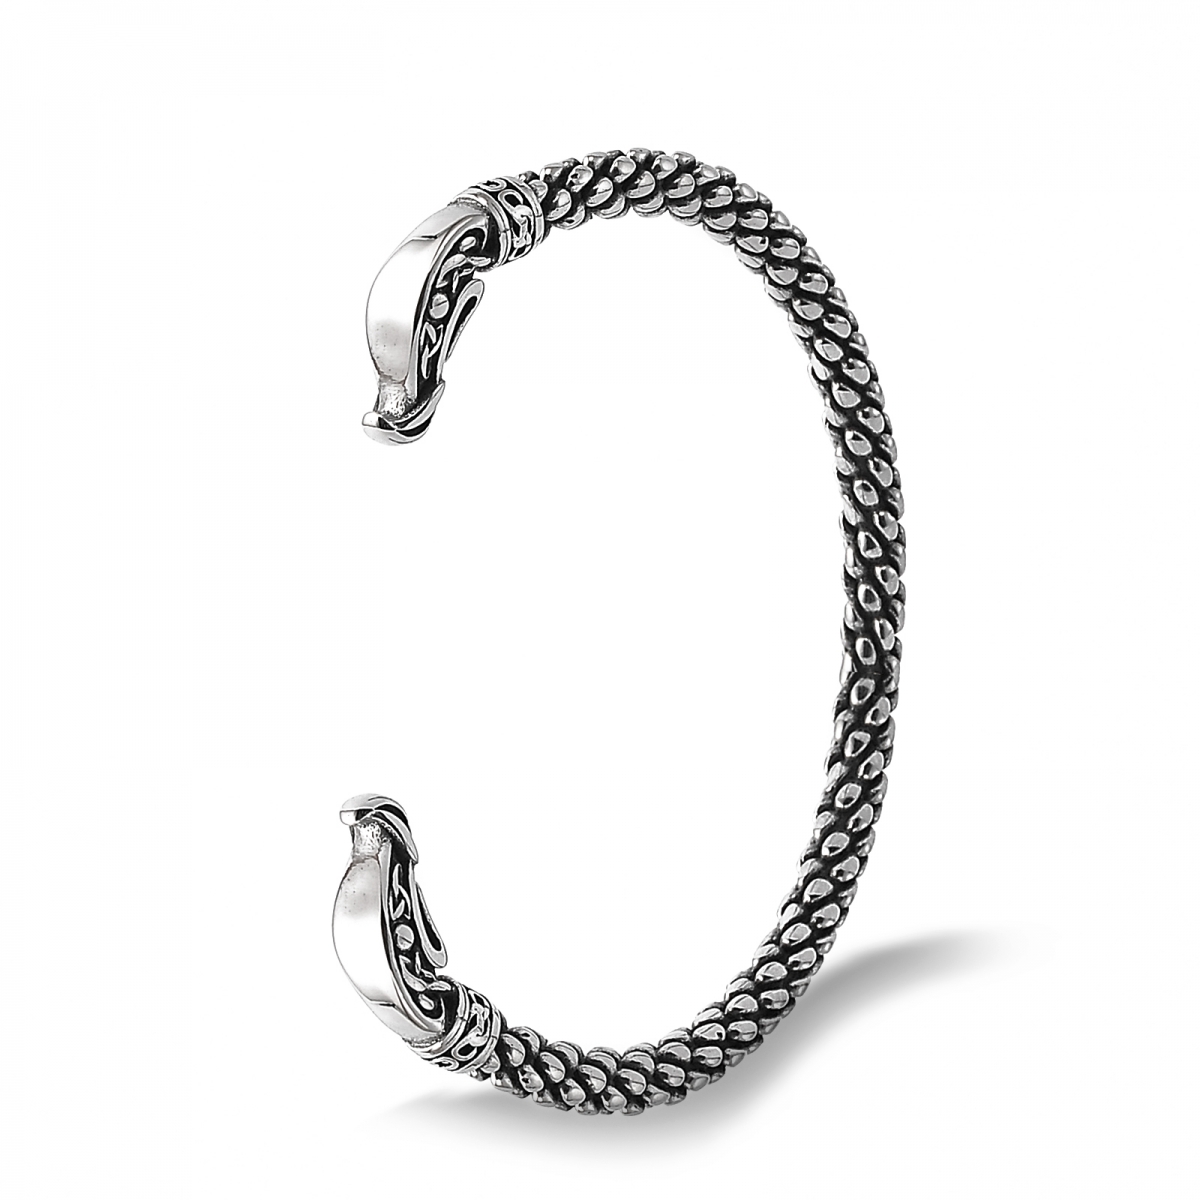 Viking Bracelet US$3.8/PC-NORSECOLLECTION- Viking Jewelry,Viking Necklace,Viking Bracelet,Viking Rings,Viking Mugs,Viking Accessories,Viking Crafts